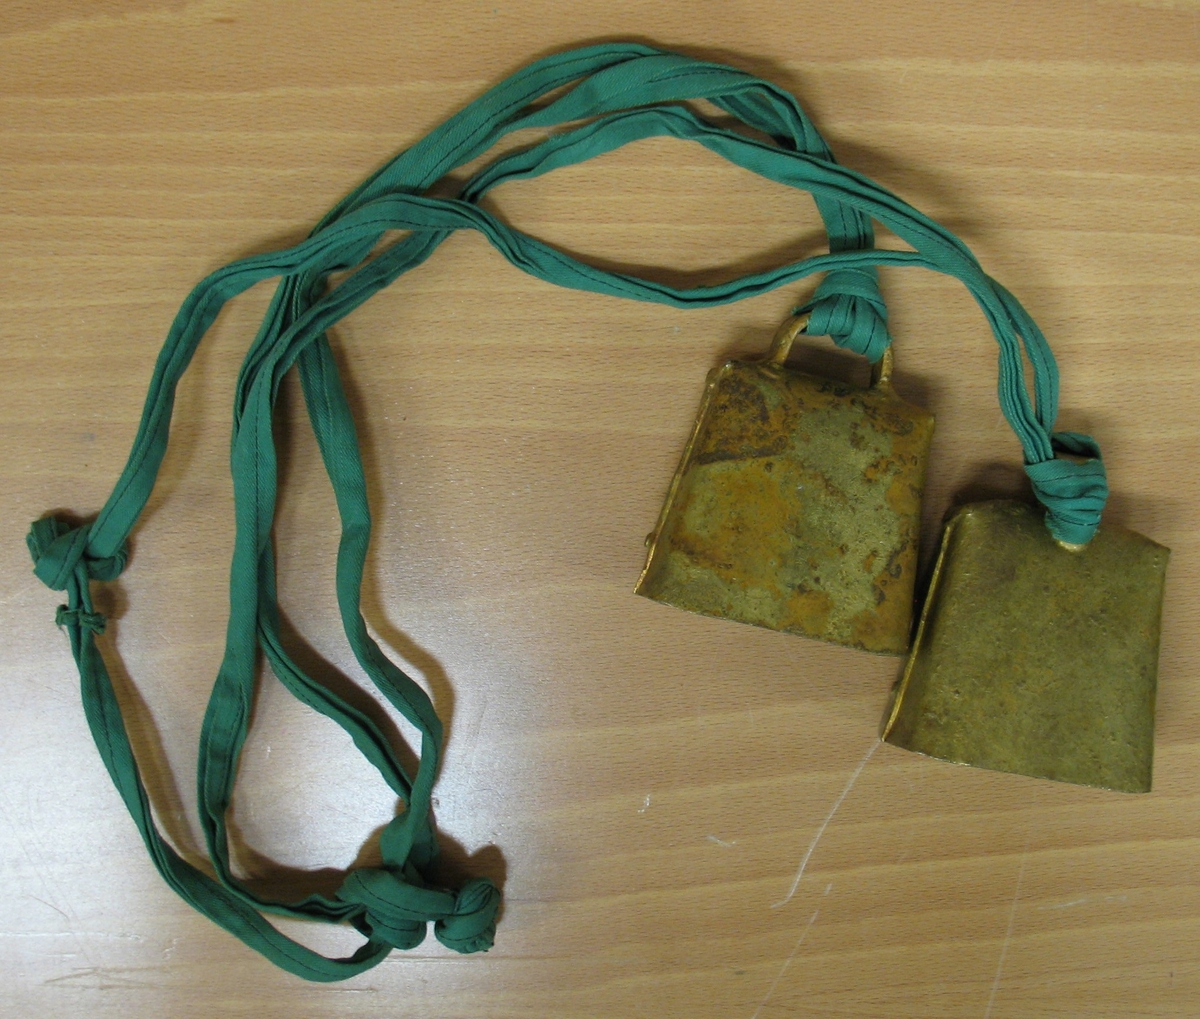 Två kobjällror som är sammansatta med ett grönt band. Användes i rytmikundervisningen på Vänerskolan. Det var även en träning när talet skulle utvecklas hos eleverna.